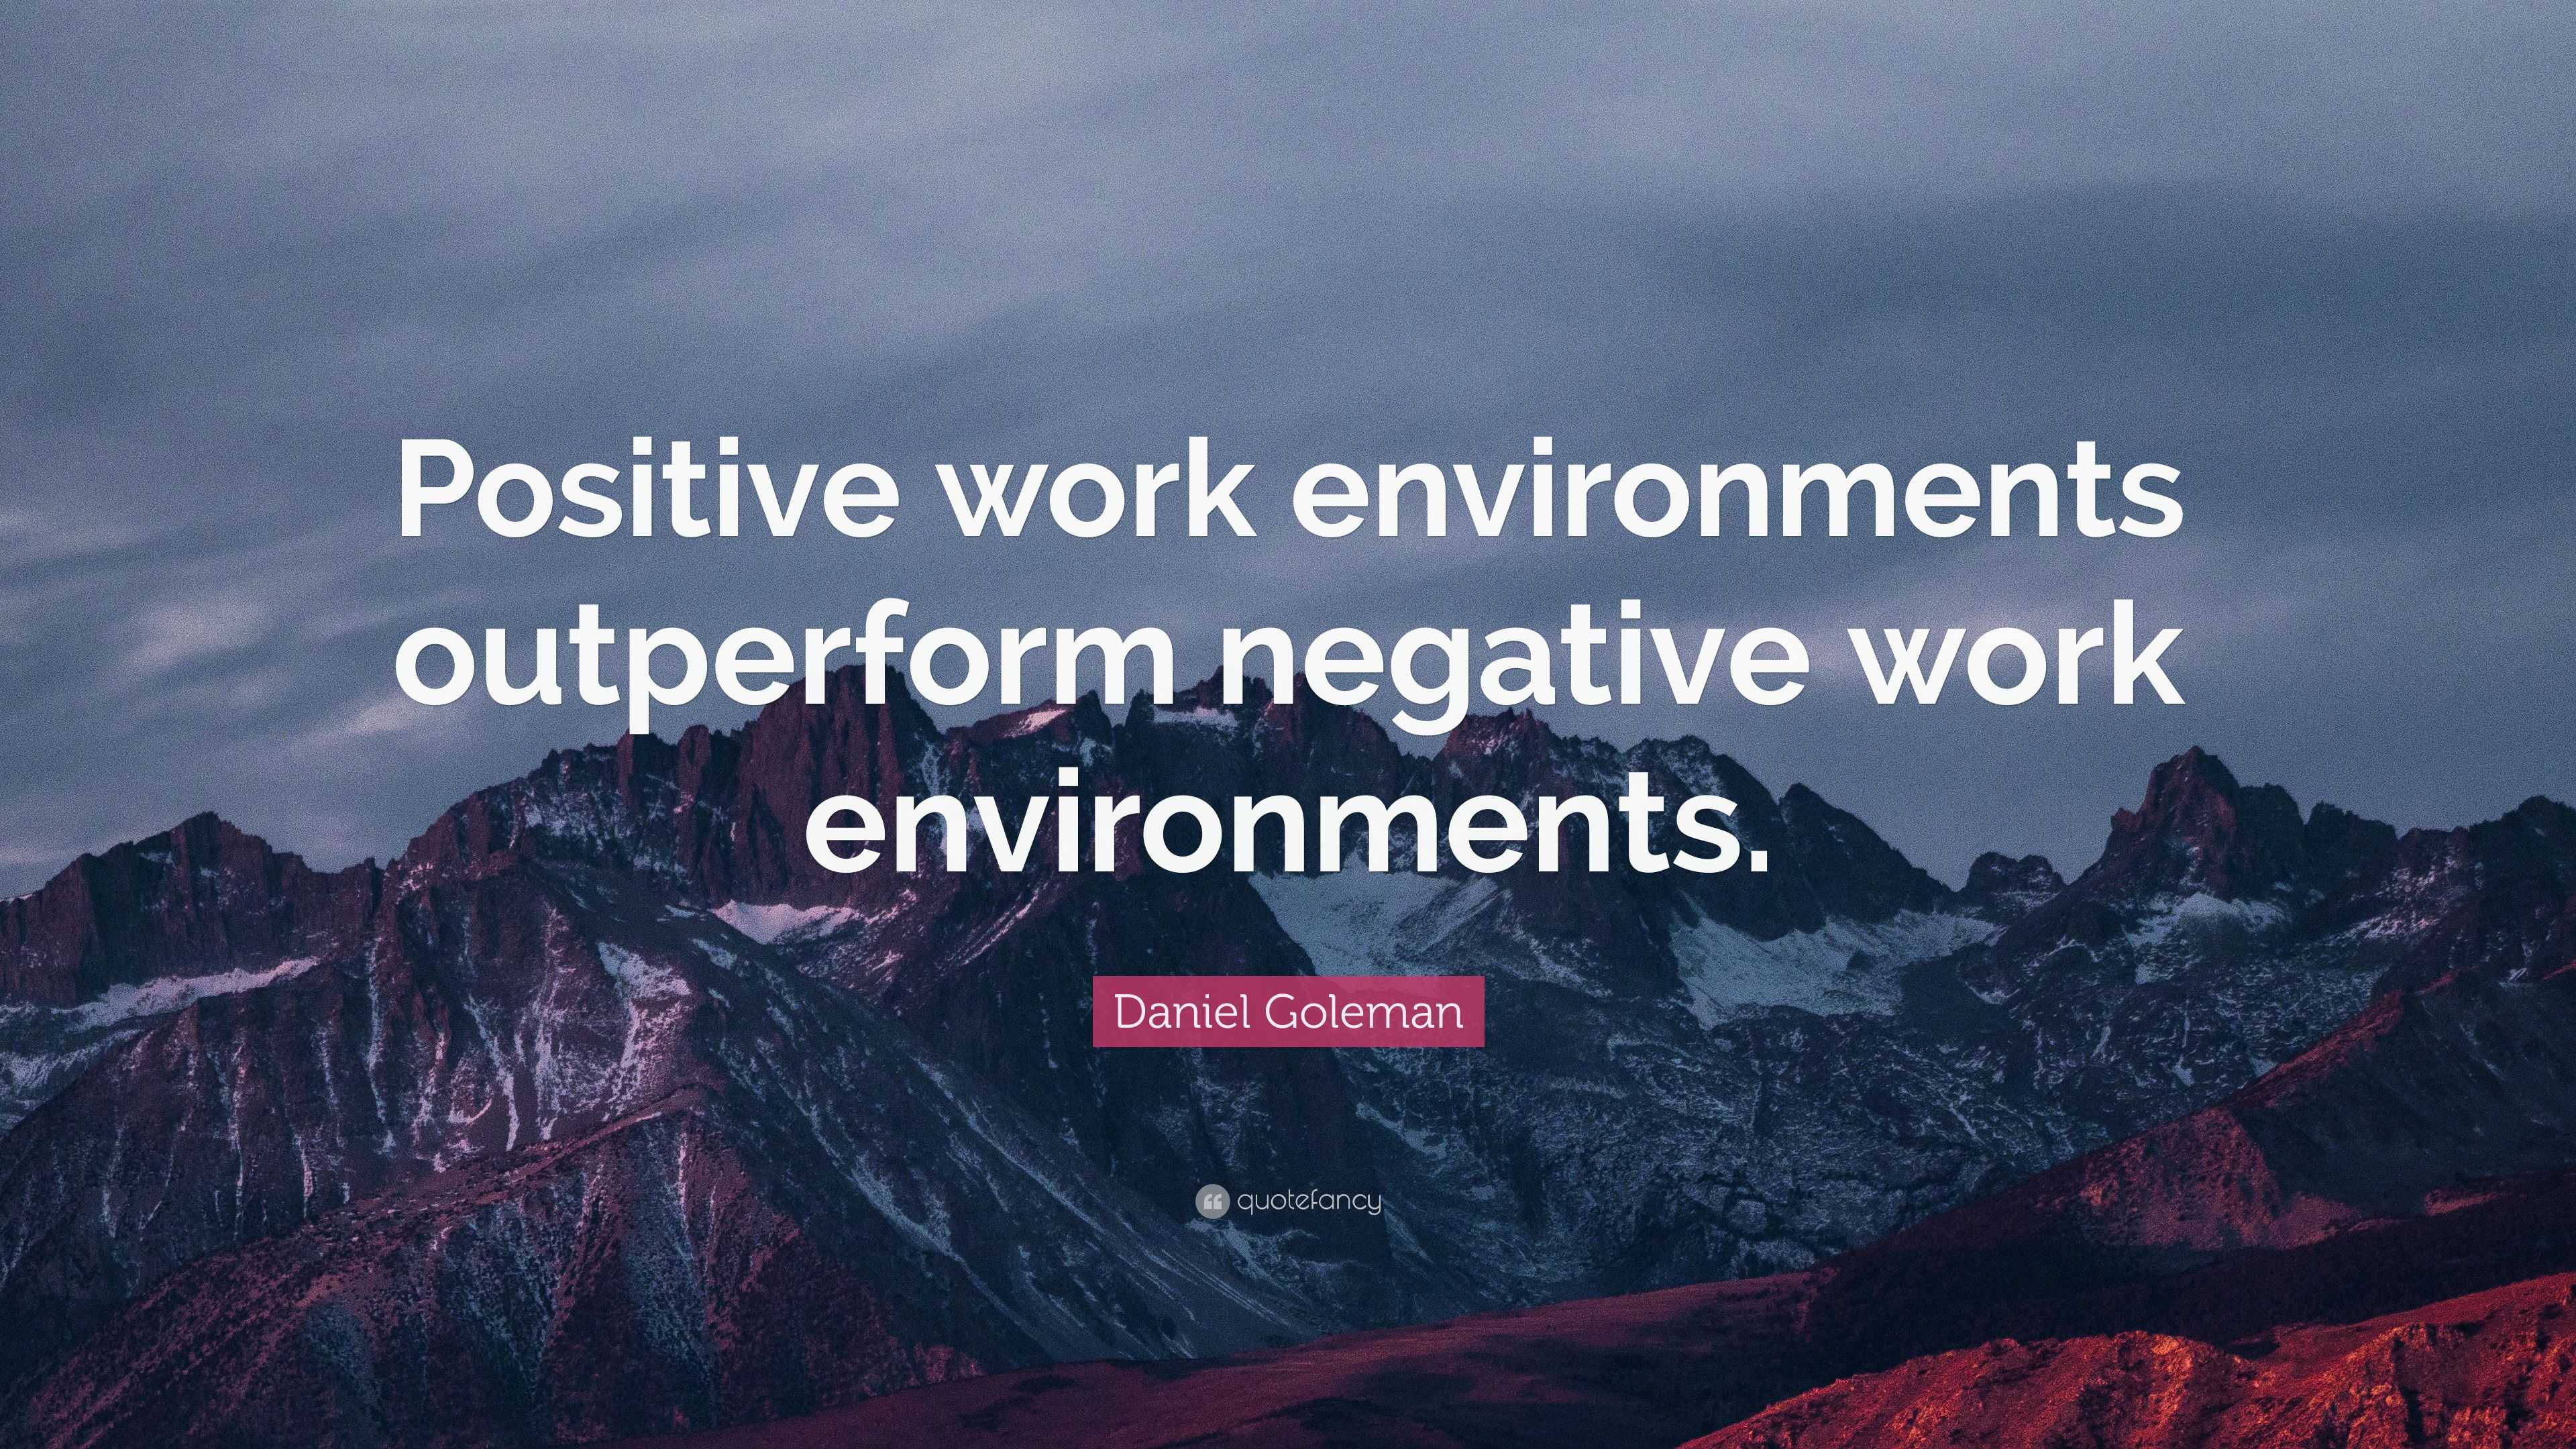 Daniel Goleman Quote: “Positive work environments outperform negative